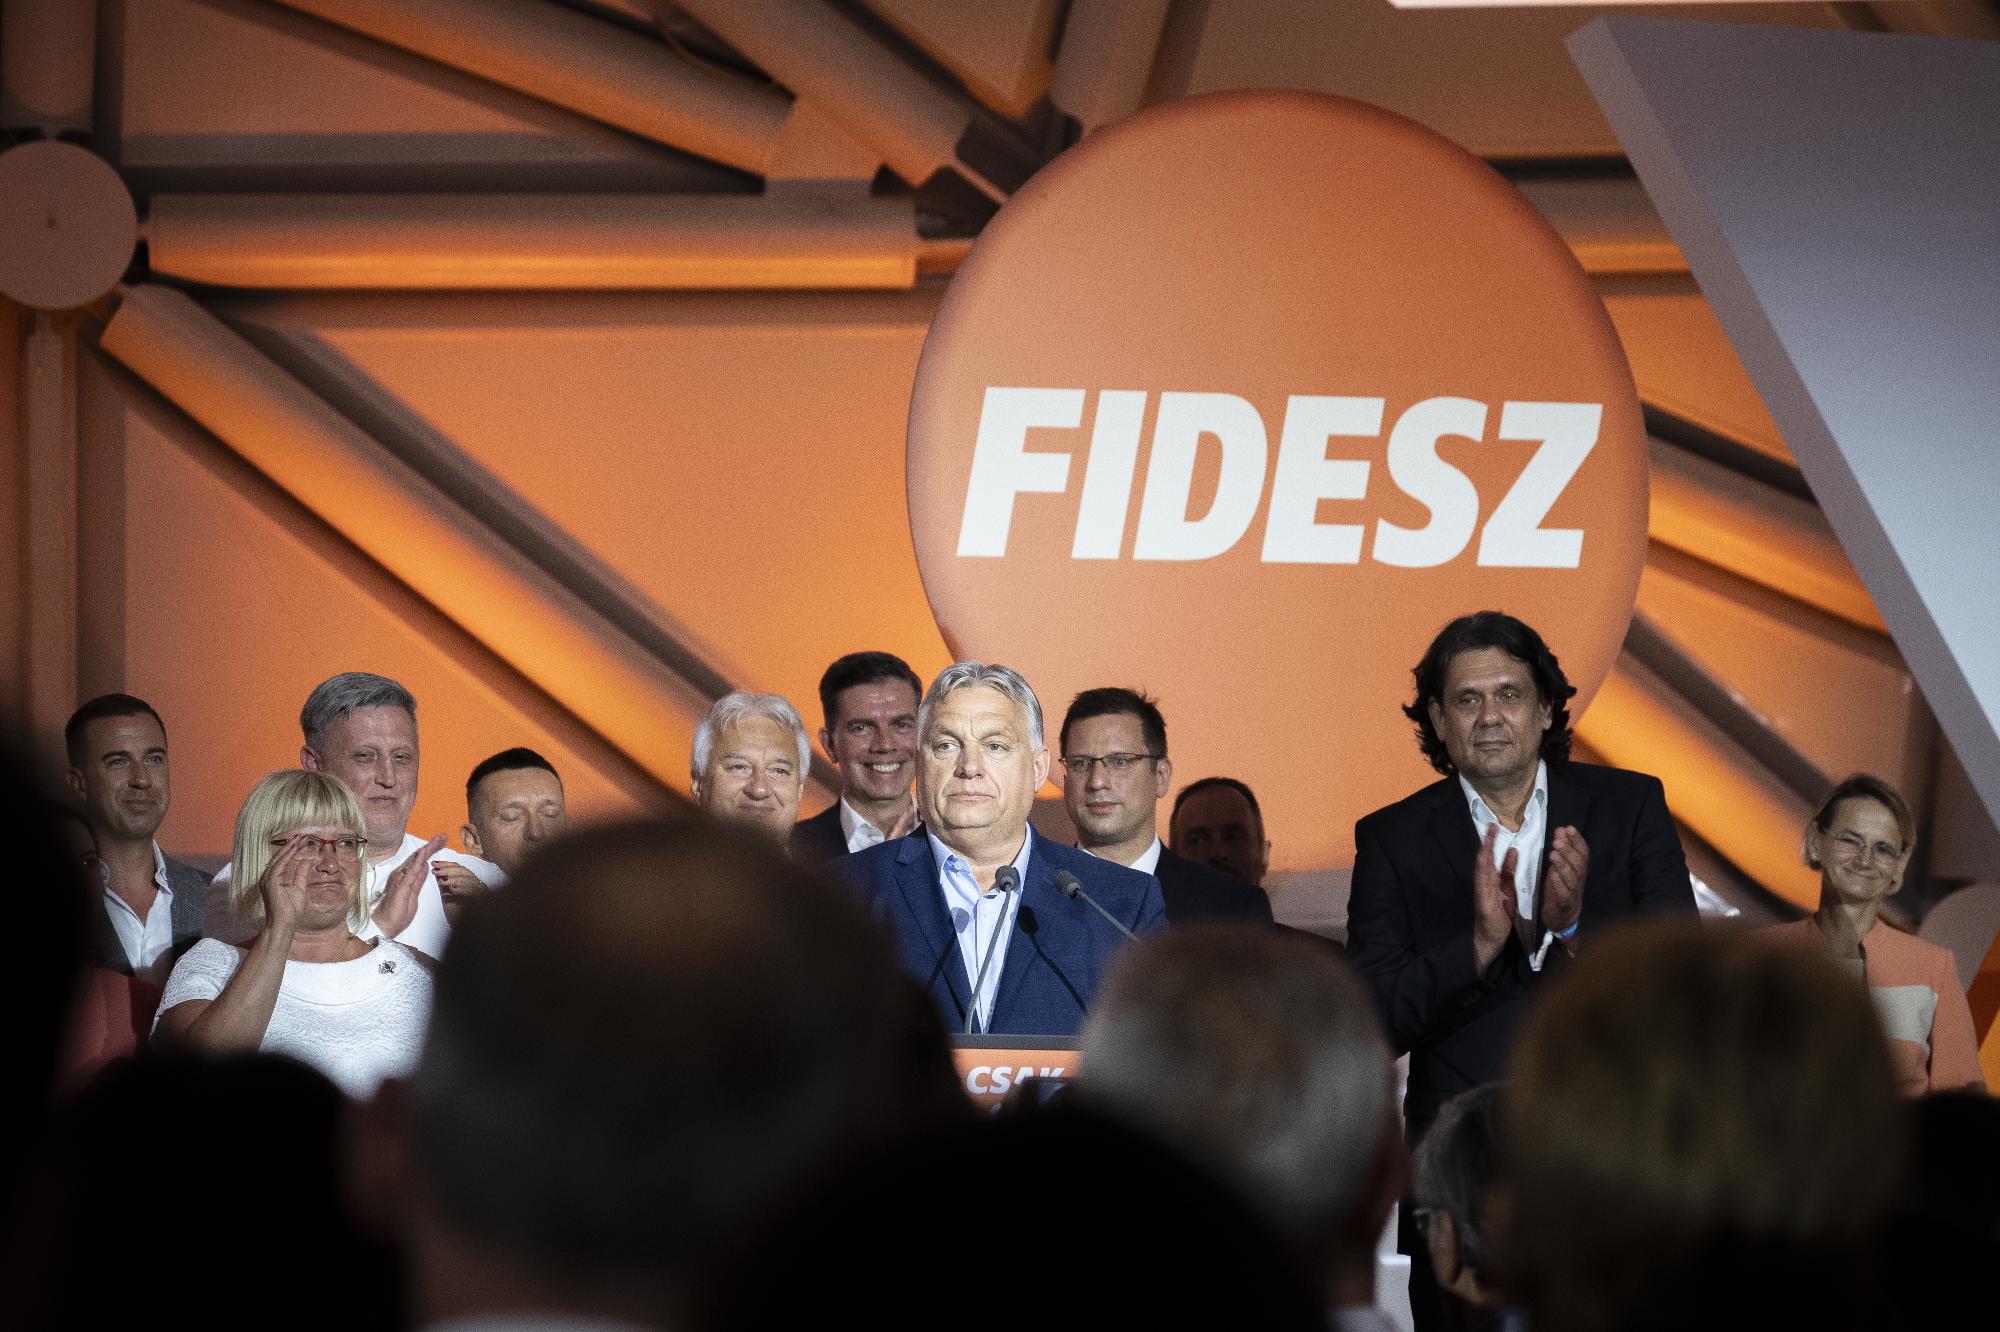 Voks 24 - A Fidesz-KDNP eredményvárója 